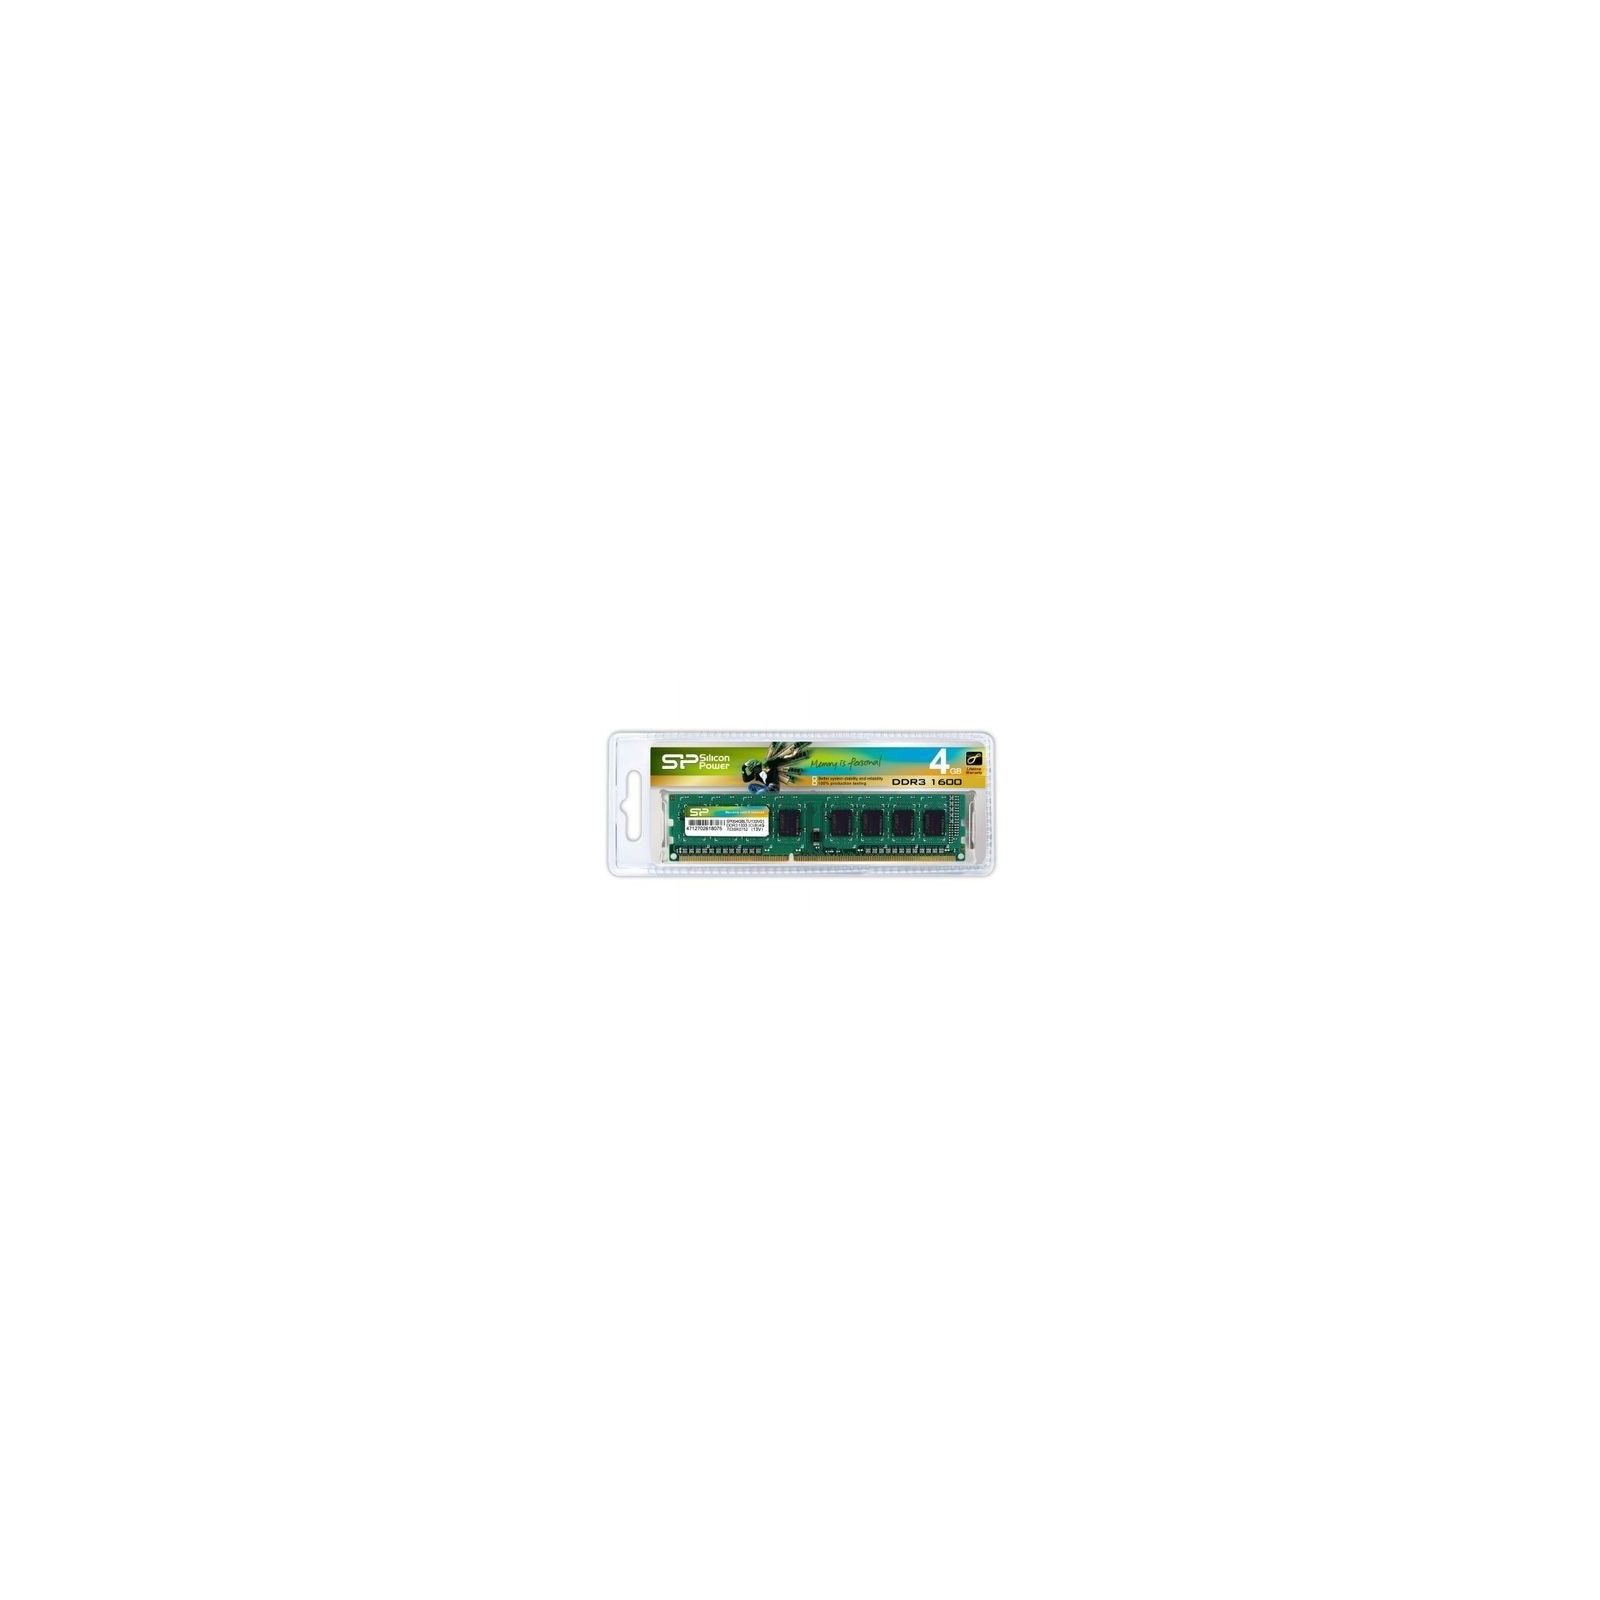 Модуль памяти для компьютера DDR3 4GB 1600 MHz Silicon Power (SP004GBLTU160V02 / SP004GBLTU160V01)